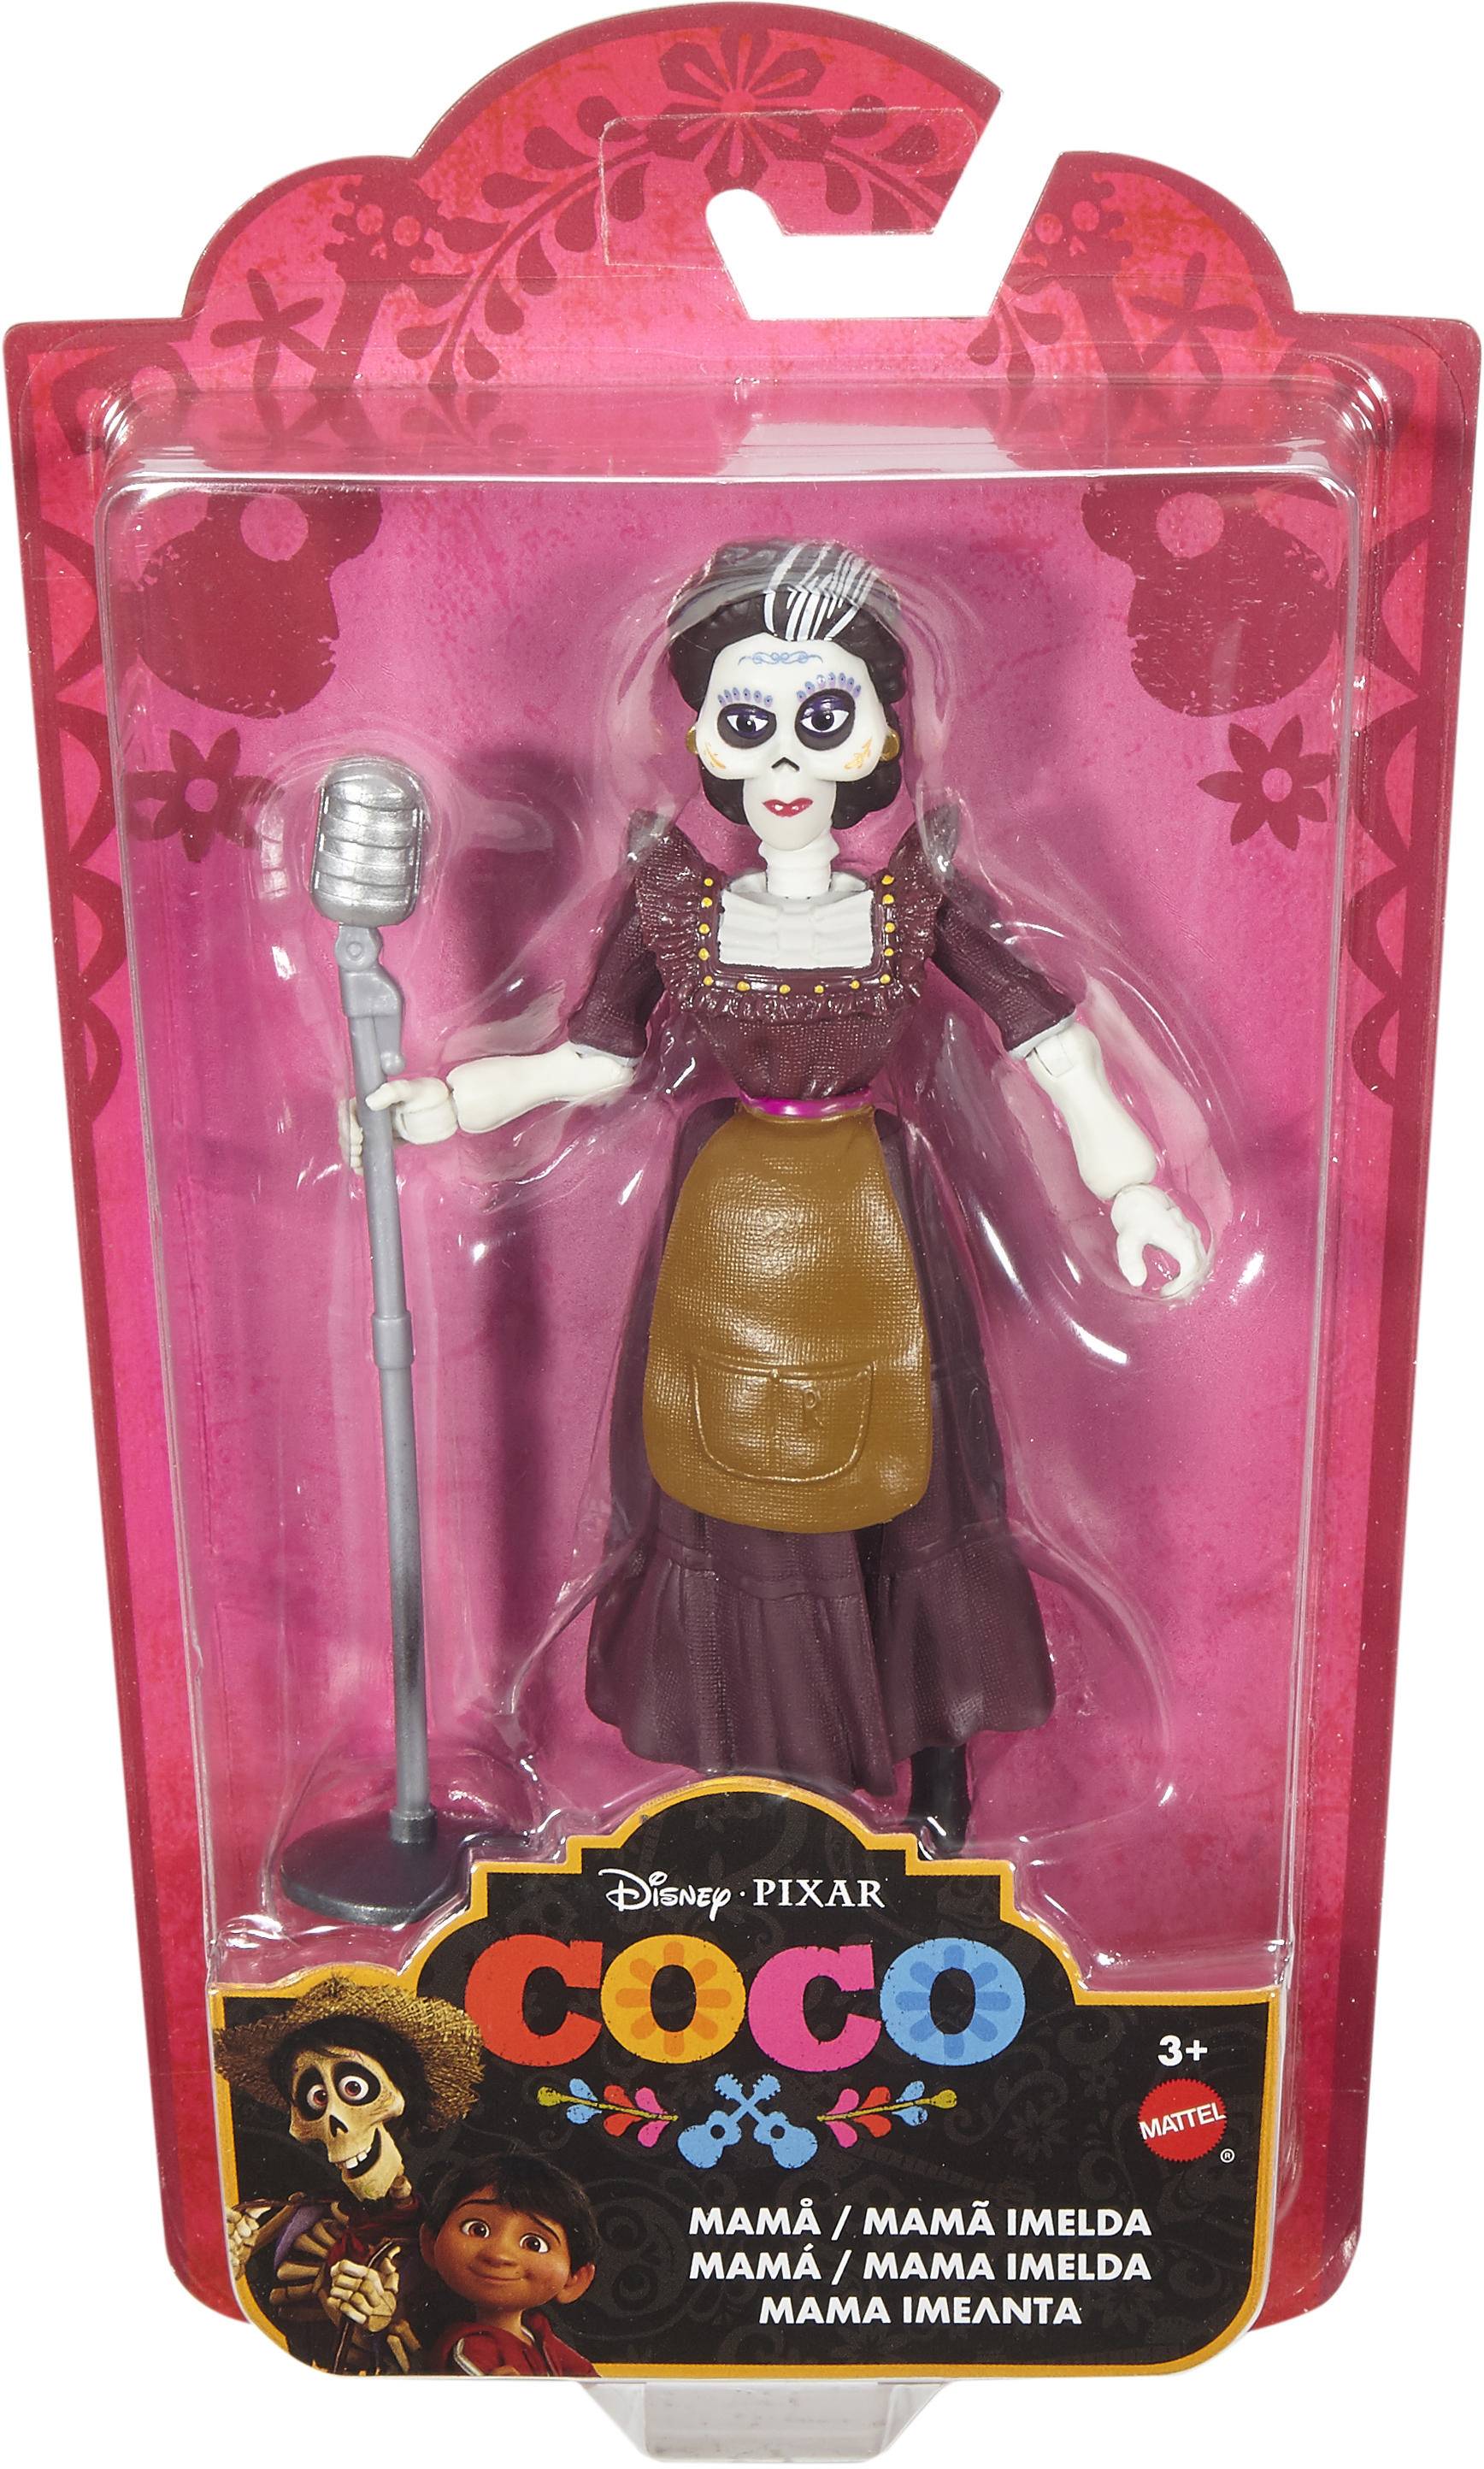 Disney Pixar Coco 6 Inch Action Figure Mama Imelda Играландия интернет магазин игрушек 